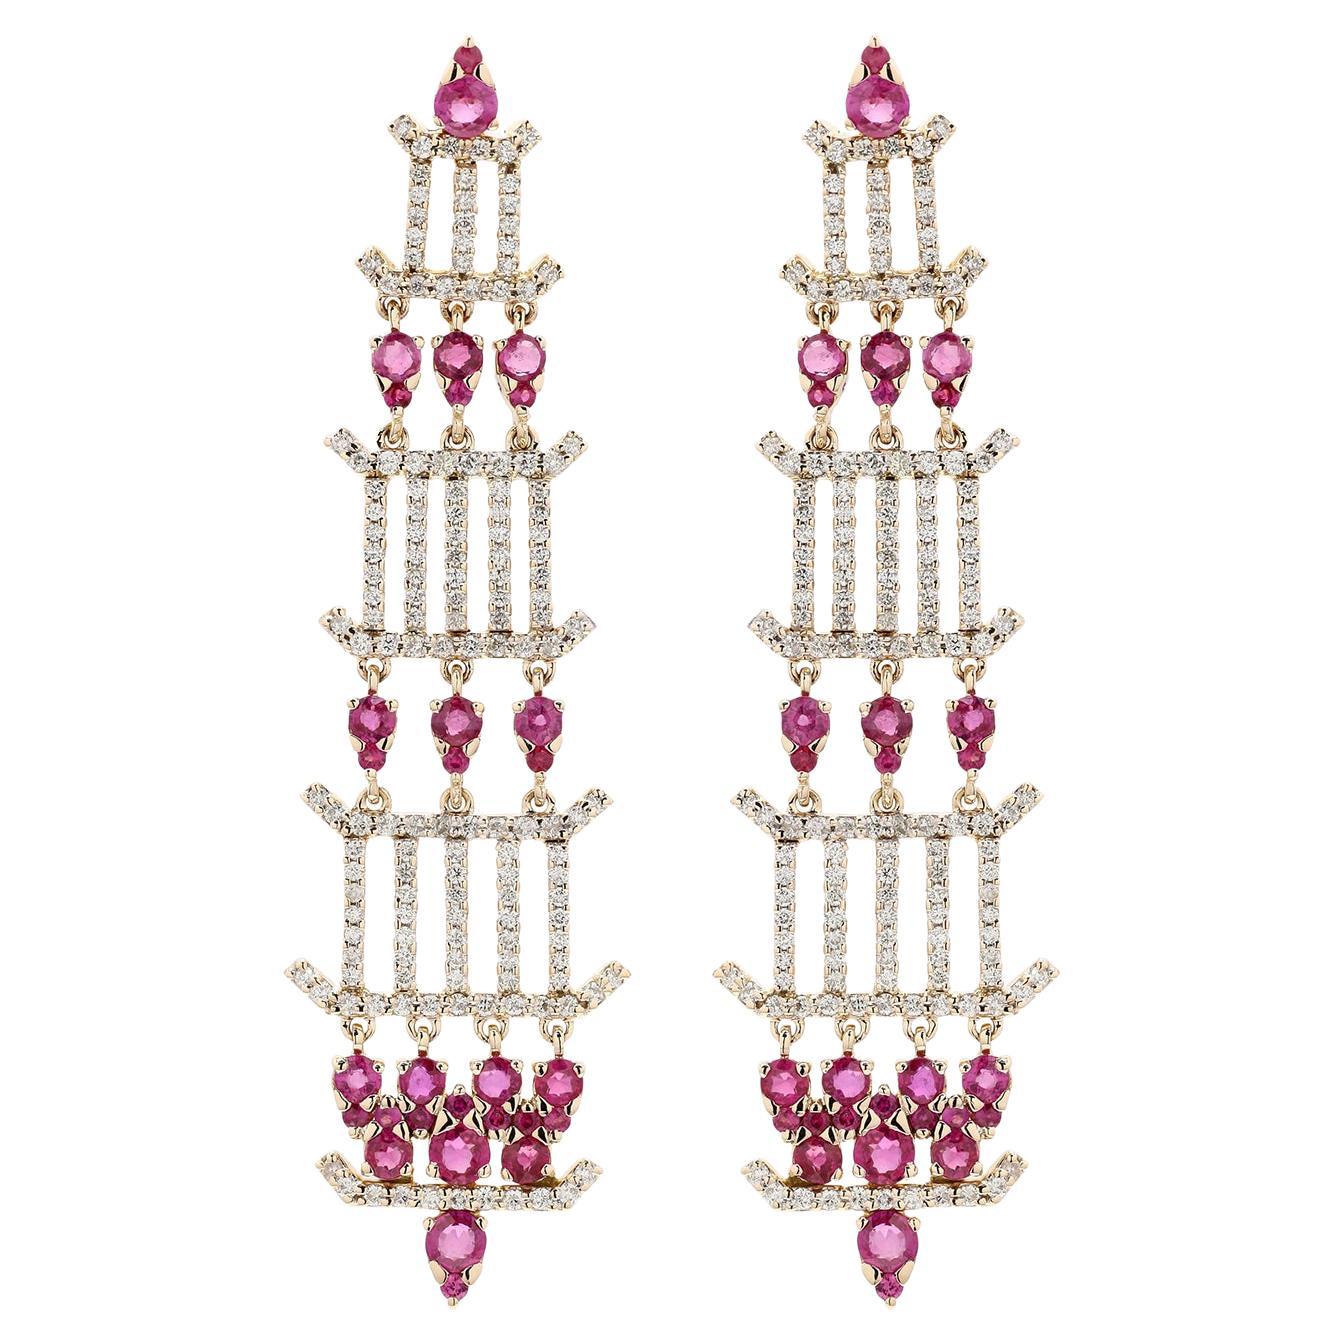 Chandelier Ruby & Diamond Earrings Made in 18k Yellow Gold